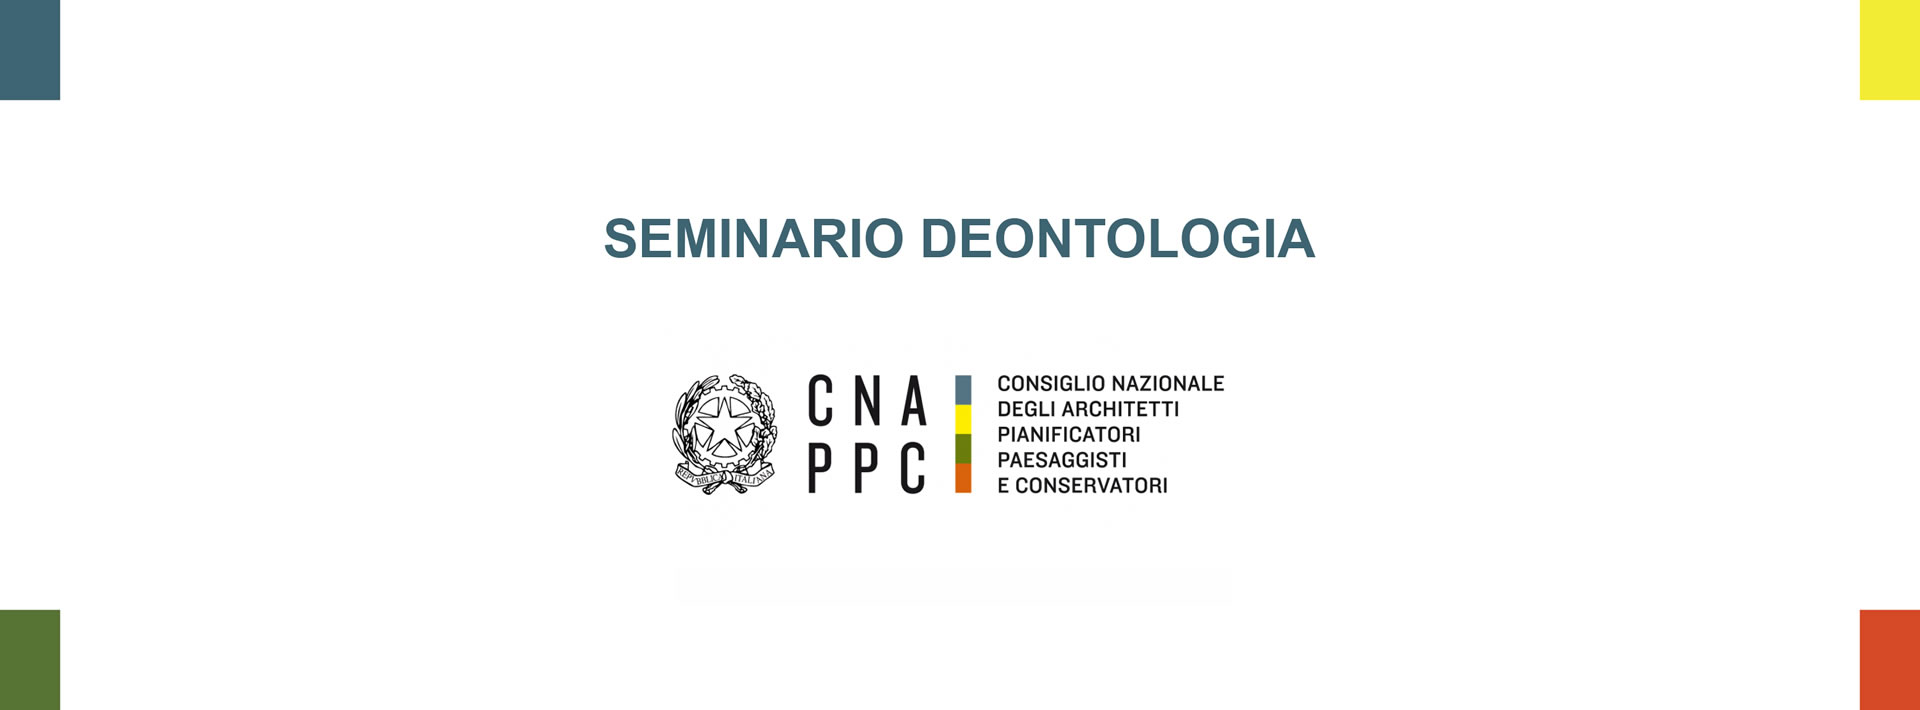 Corso di Deontologia Anno 2019 FAD – Seminario annuale sui temi deontologici